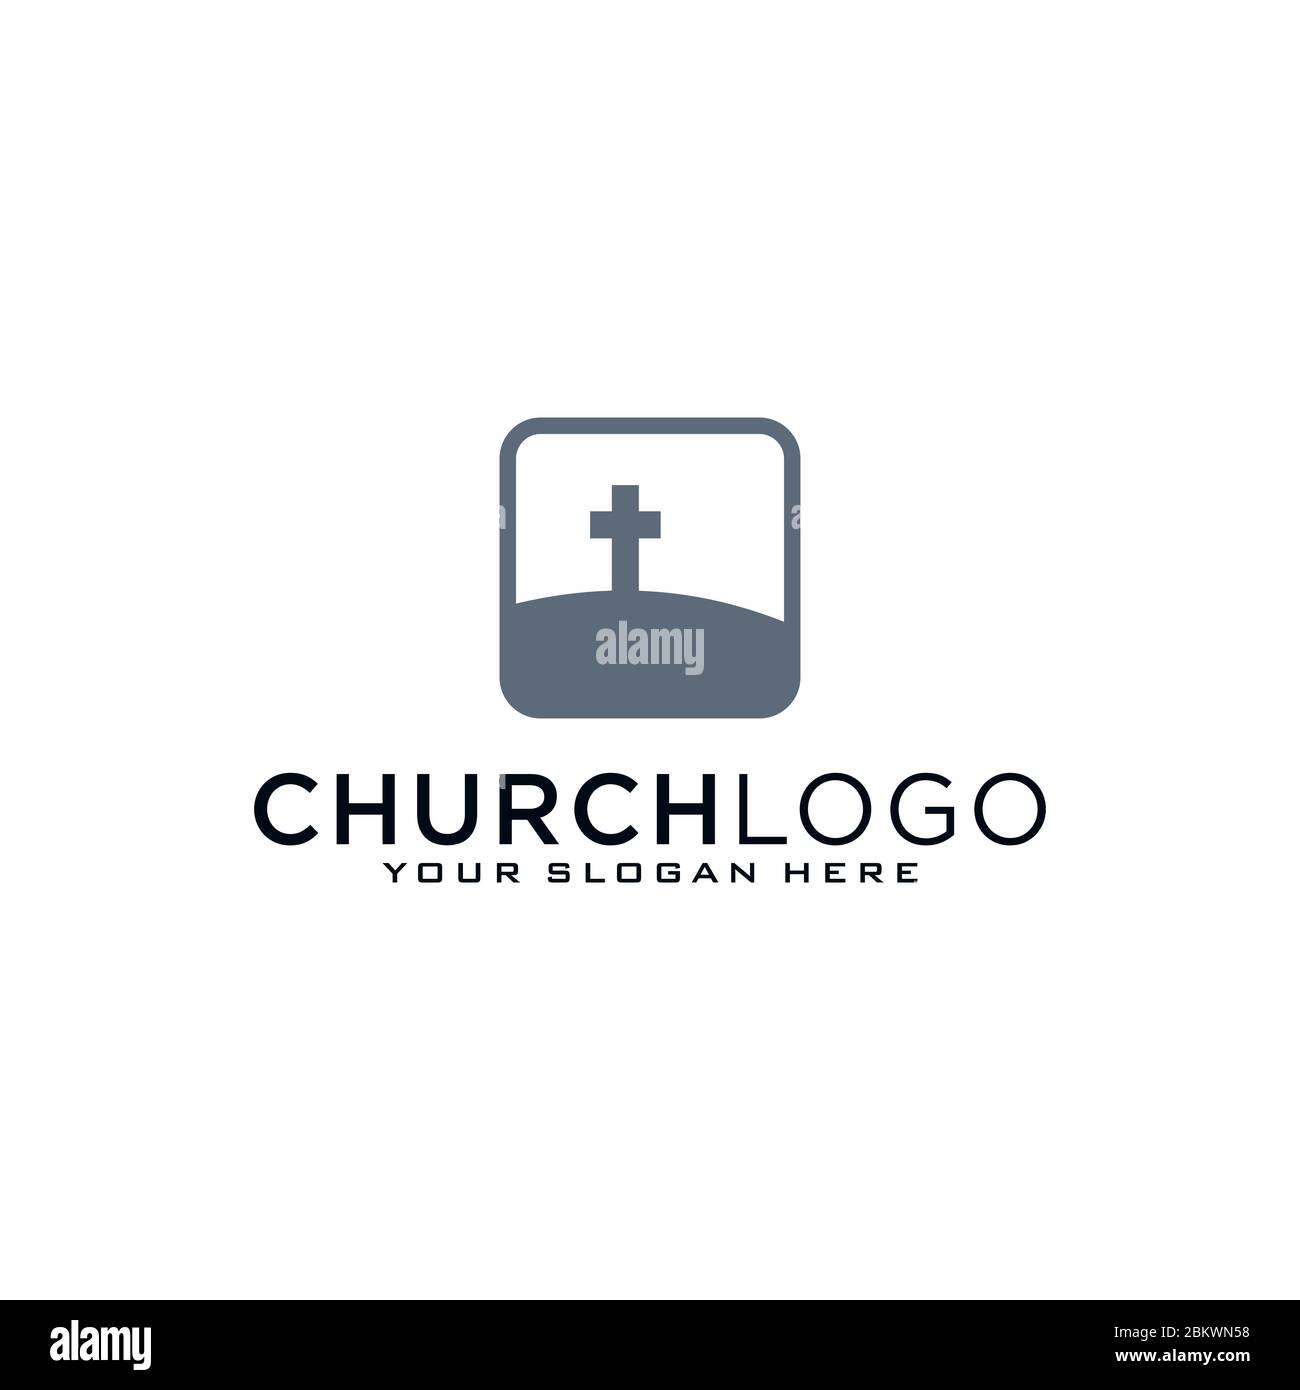 Logotipo de la Iglesia. Símbolos cristianos. La Cruz de Jesús, el fuego del Espíritu Santo y la paloma. Ilustración del Vector